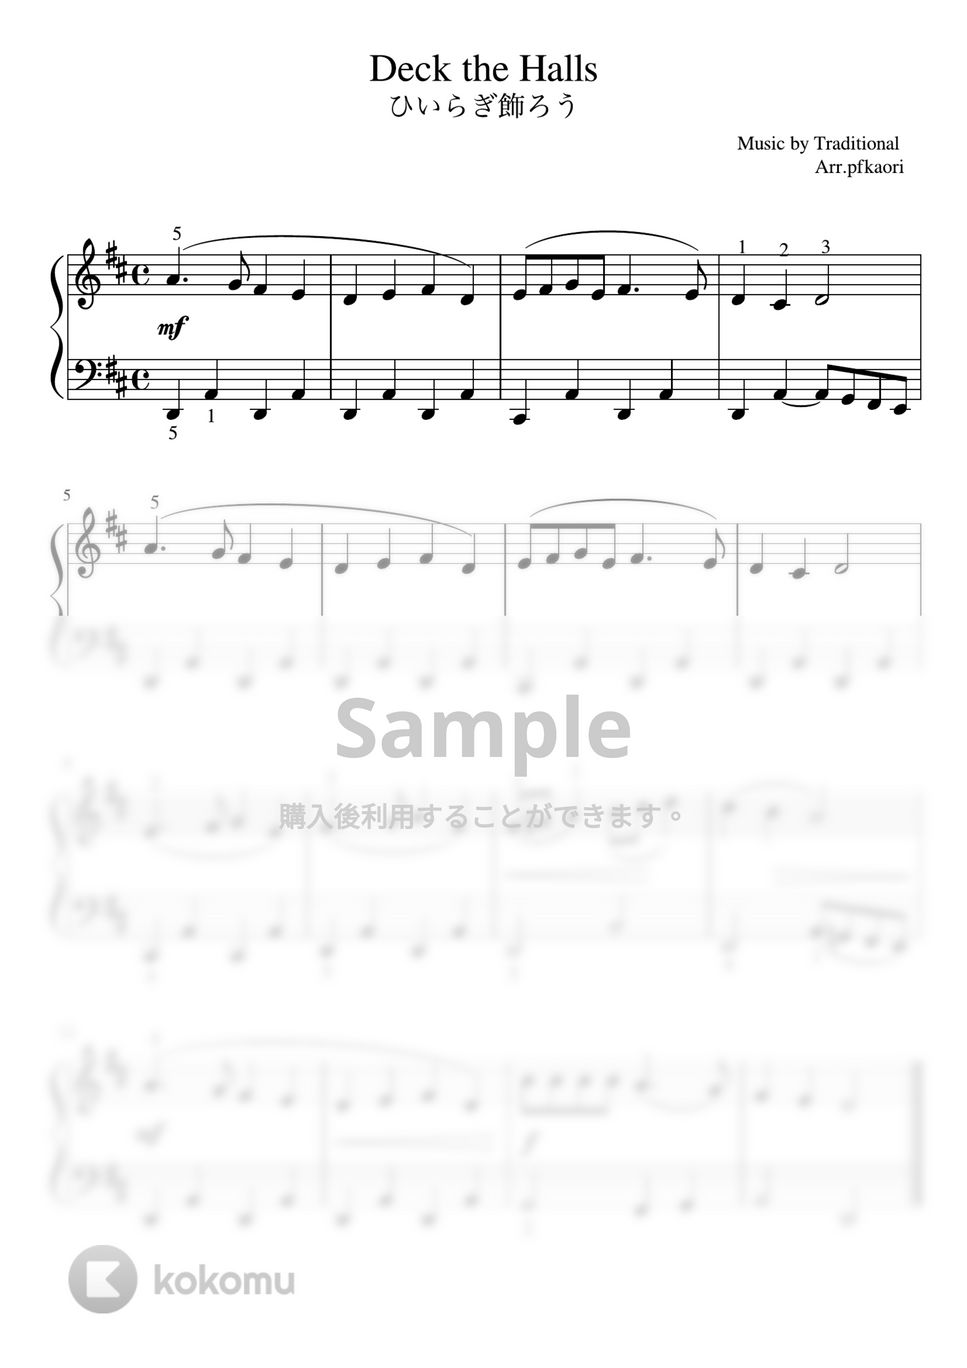 トラディショナル - ひいらぎ飾ろう (Ddur ・ピアノソロ初級) by pfkaori